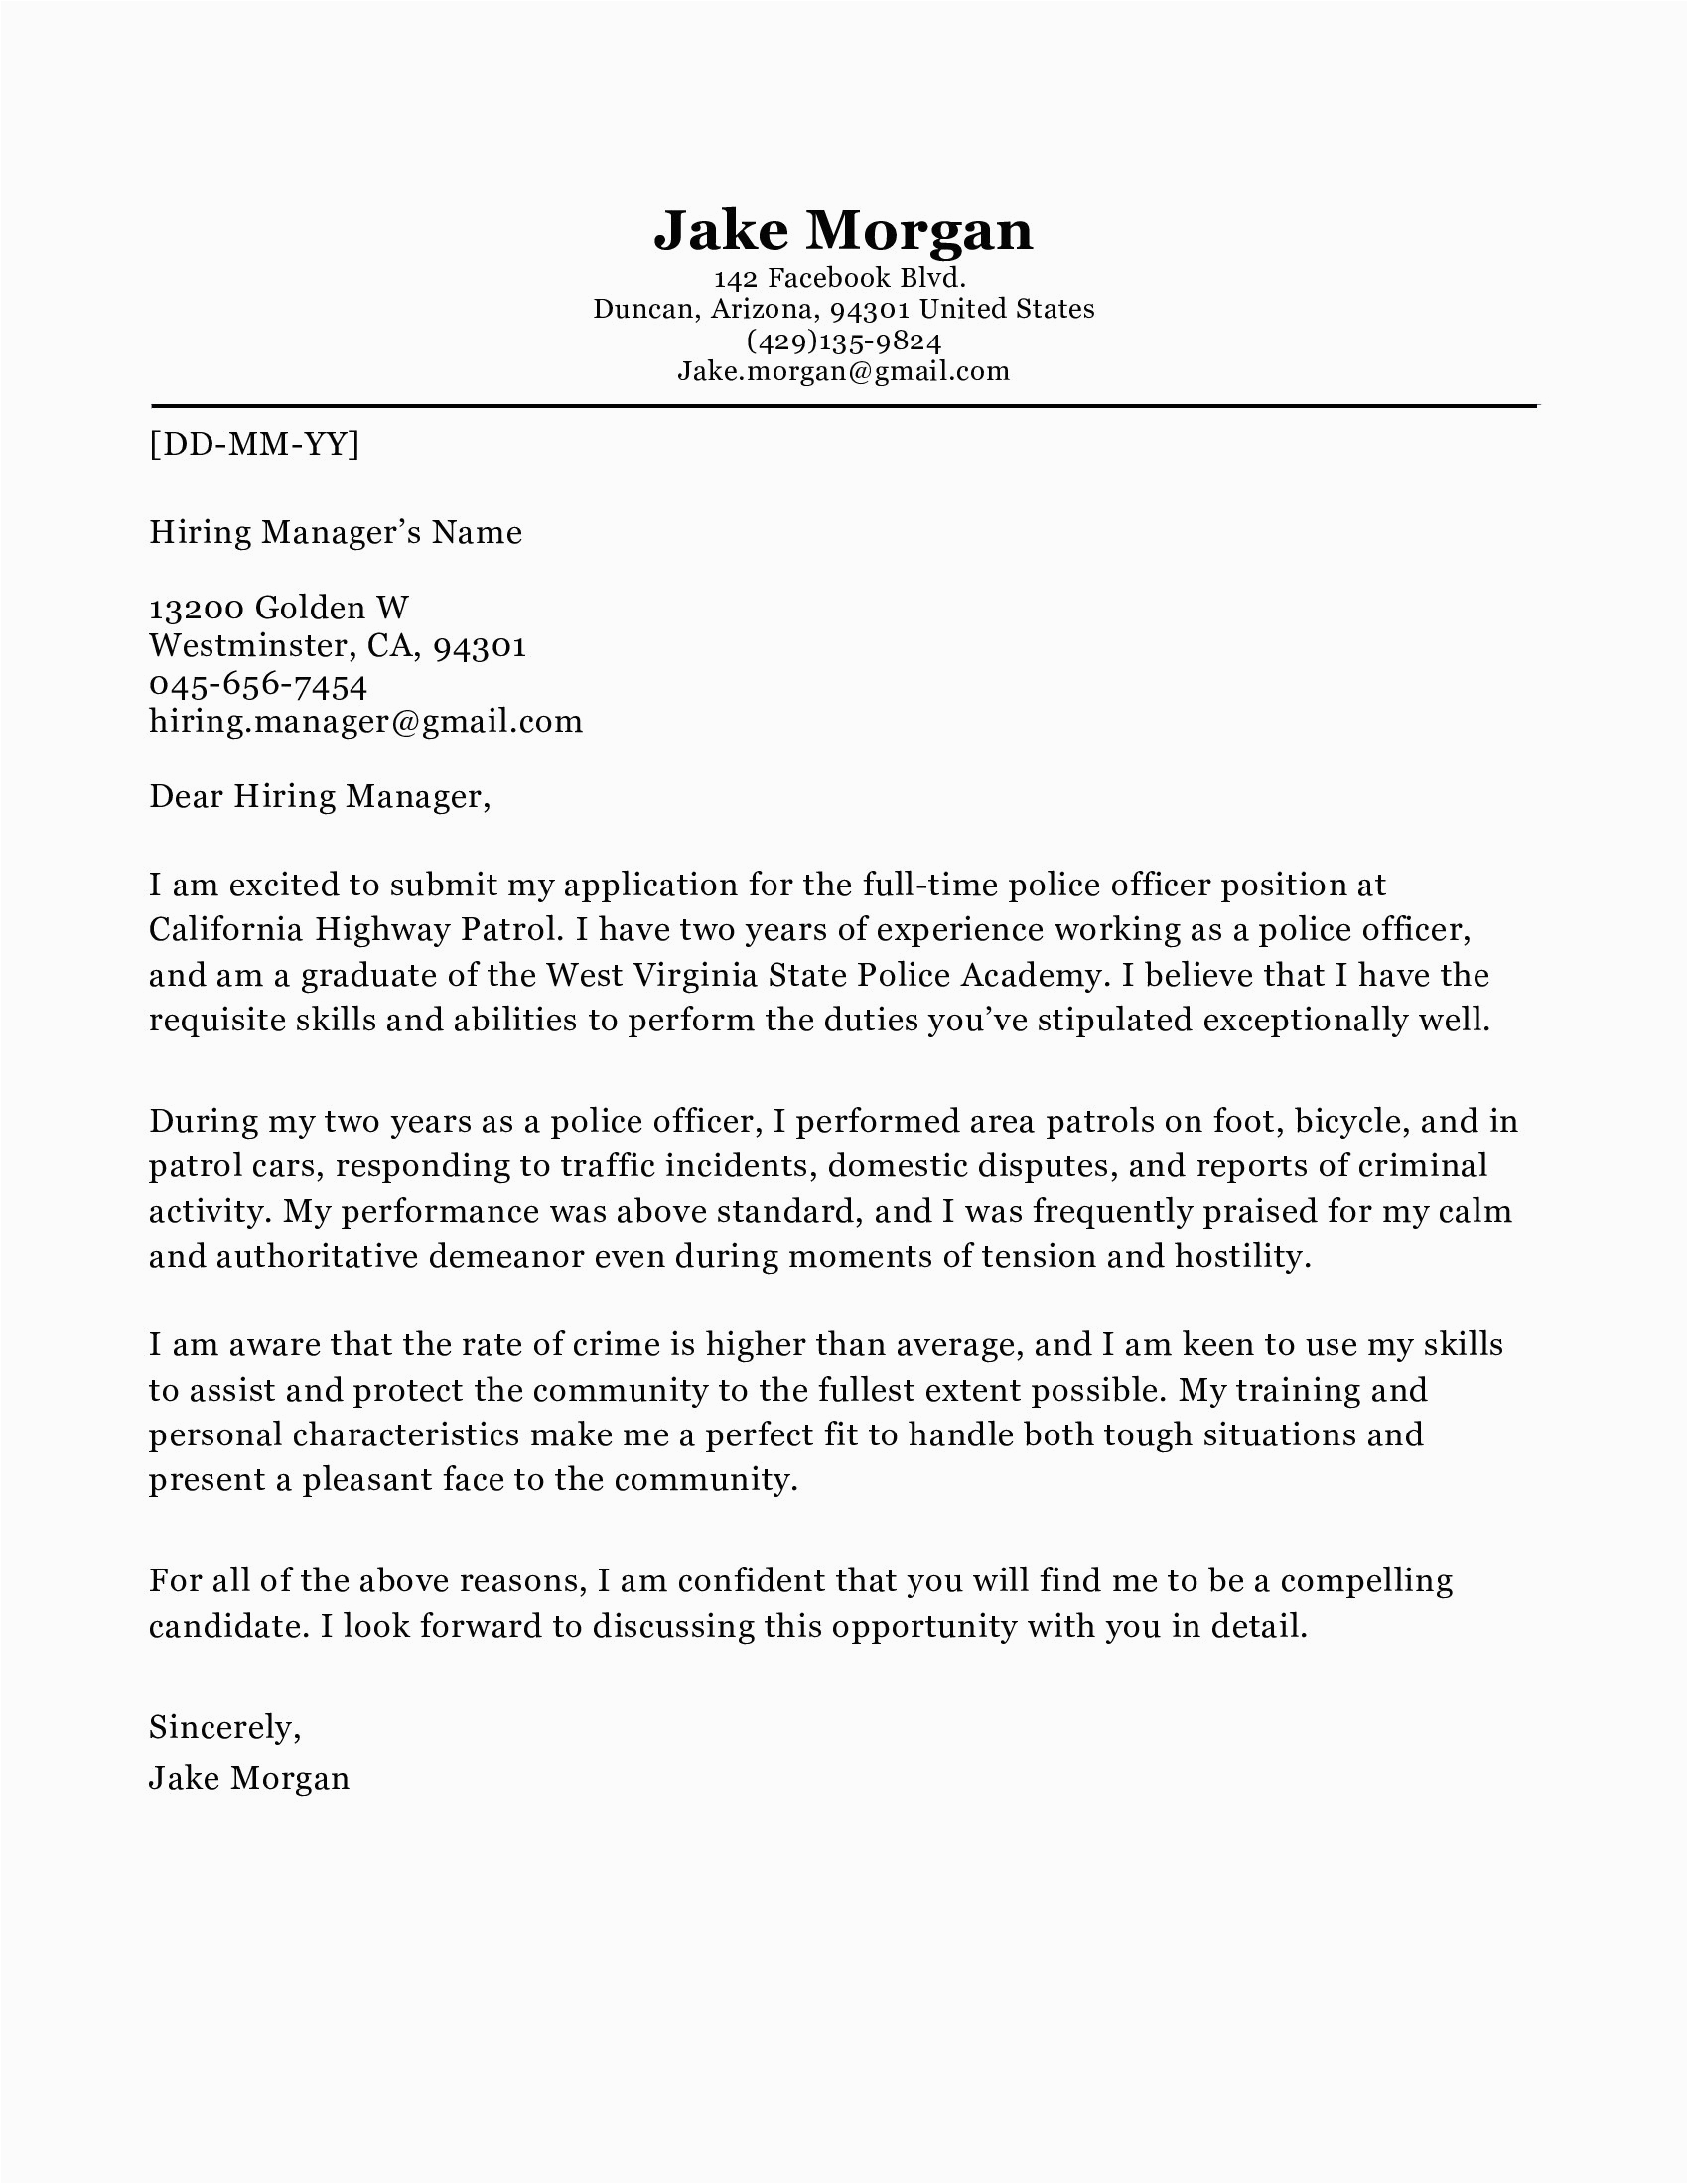 Sample Resume Cover Letter for Police Officer 10 Cover Letter for Police Ficer